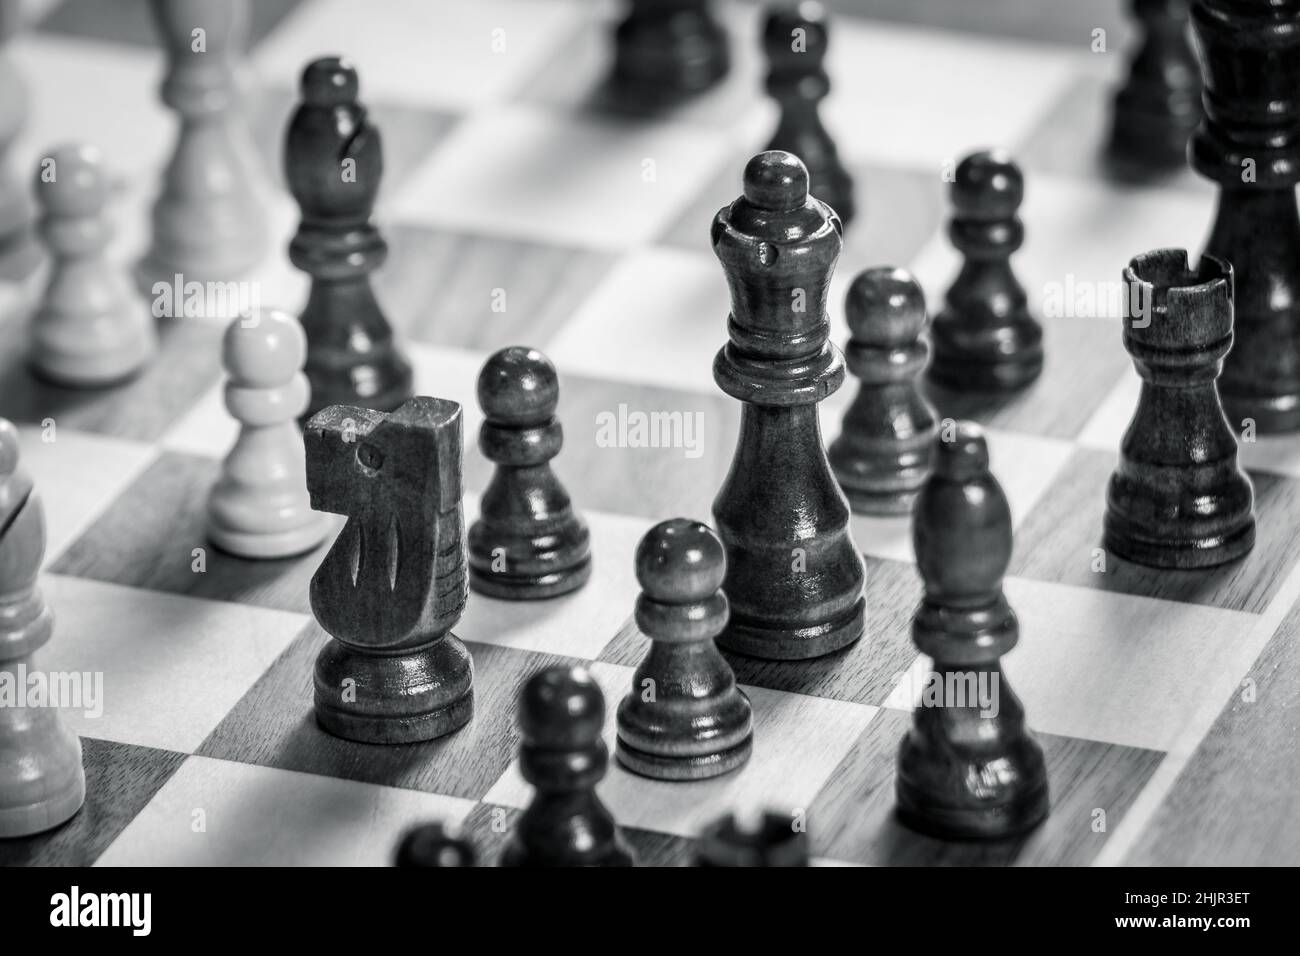 Tablero de ajedrez con juego de ajedrez en blanco y negro. White's Queen y Knight en el enfoque Foto de stock